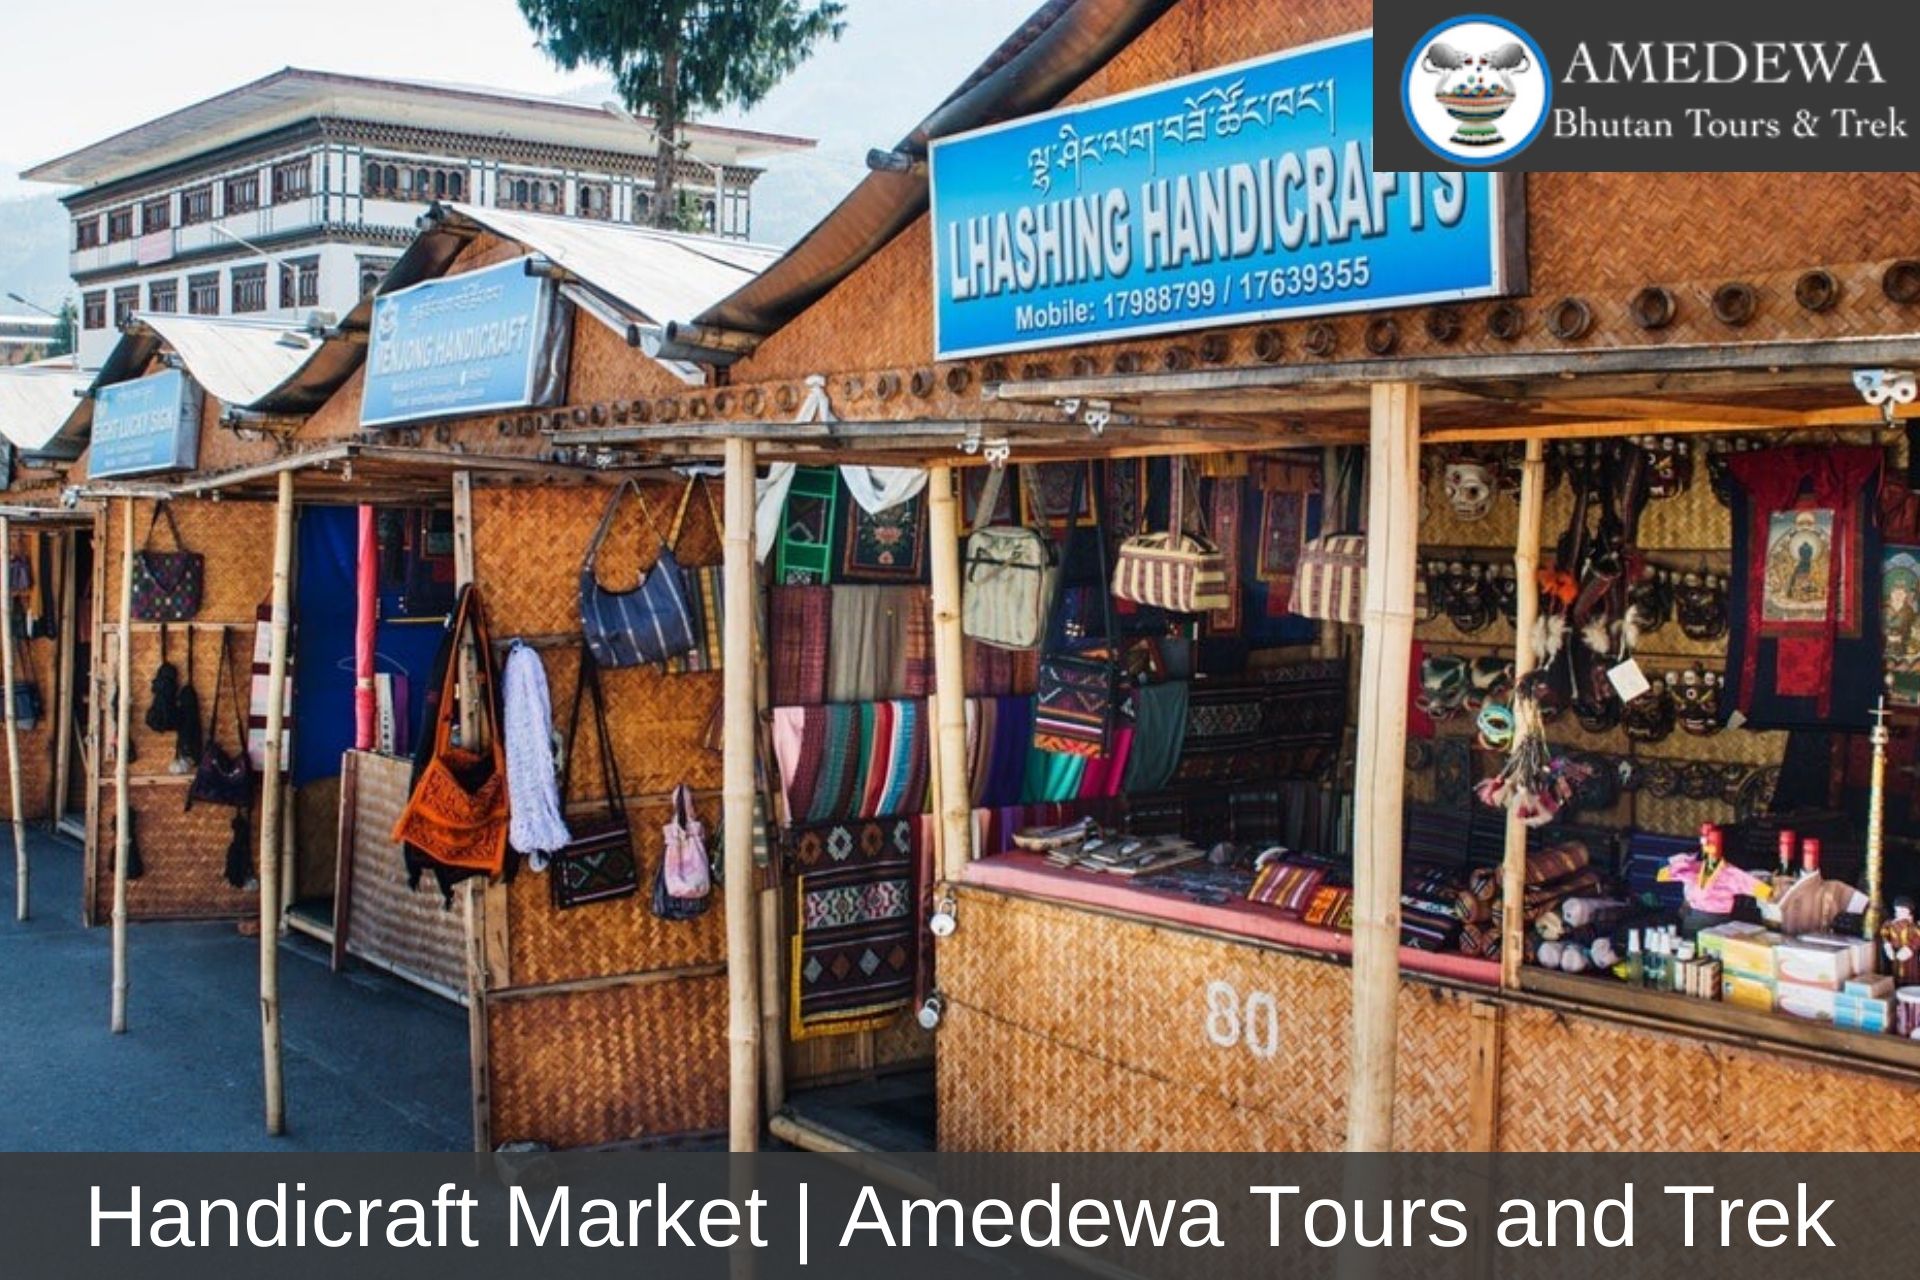 Handicraft Market - Amedewa Tours and Trek